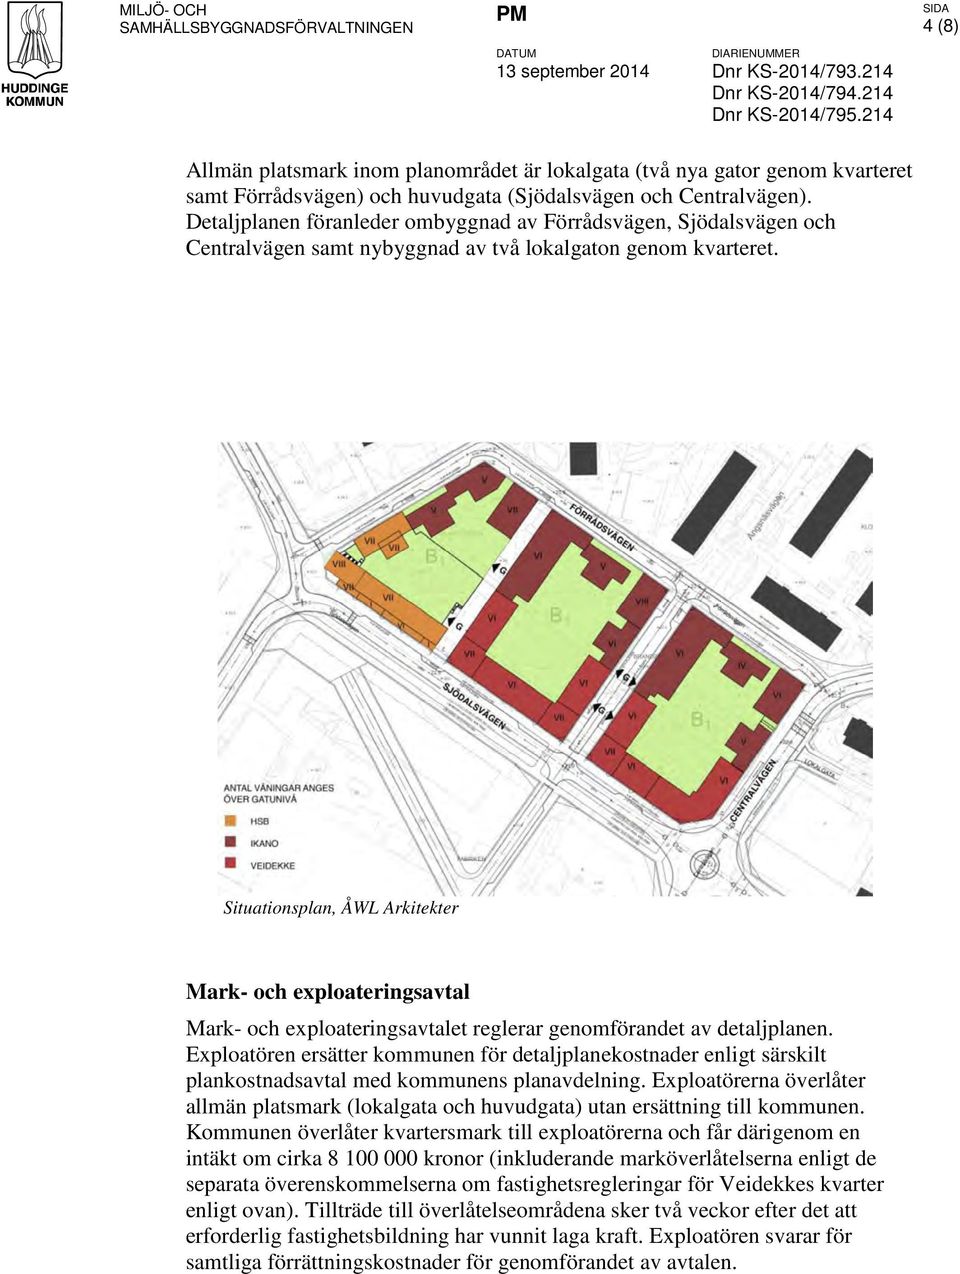 Detaljplanen föranleder ombyggnad av Förrådsvägen, Sjödalsvägen och Centralvägen samt nybyggnad av två lokalgaton genom kvarteret.